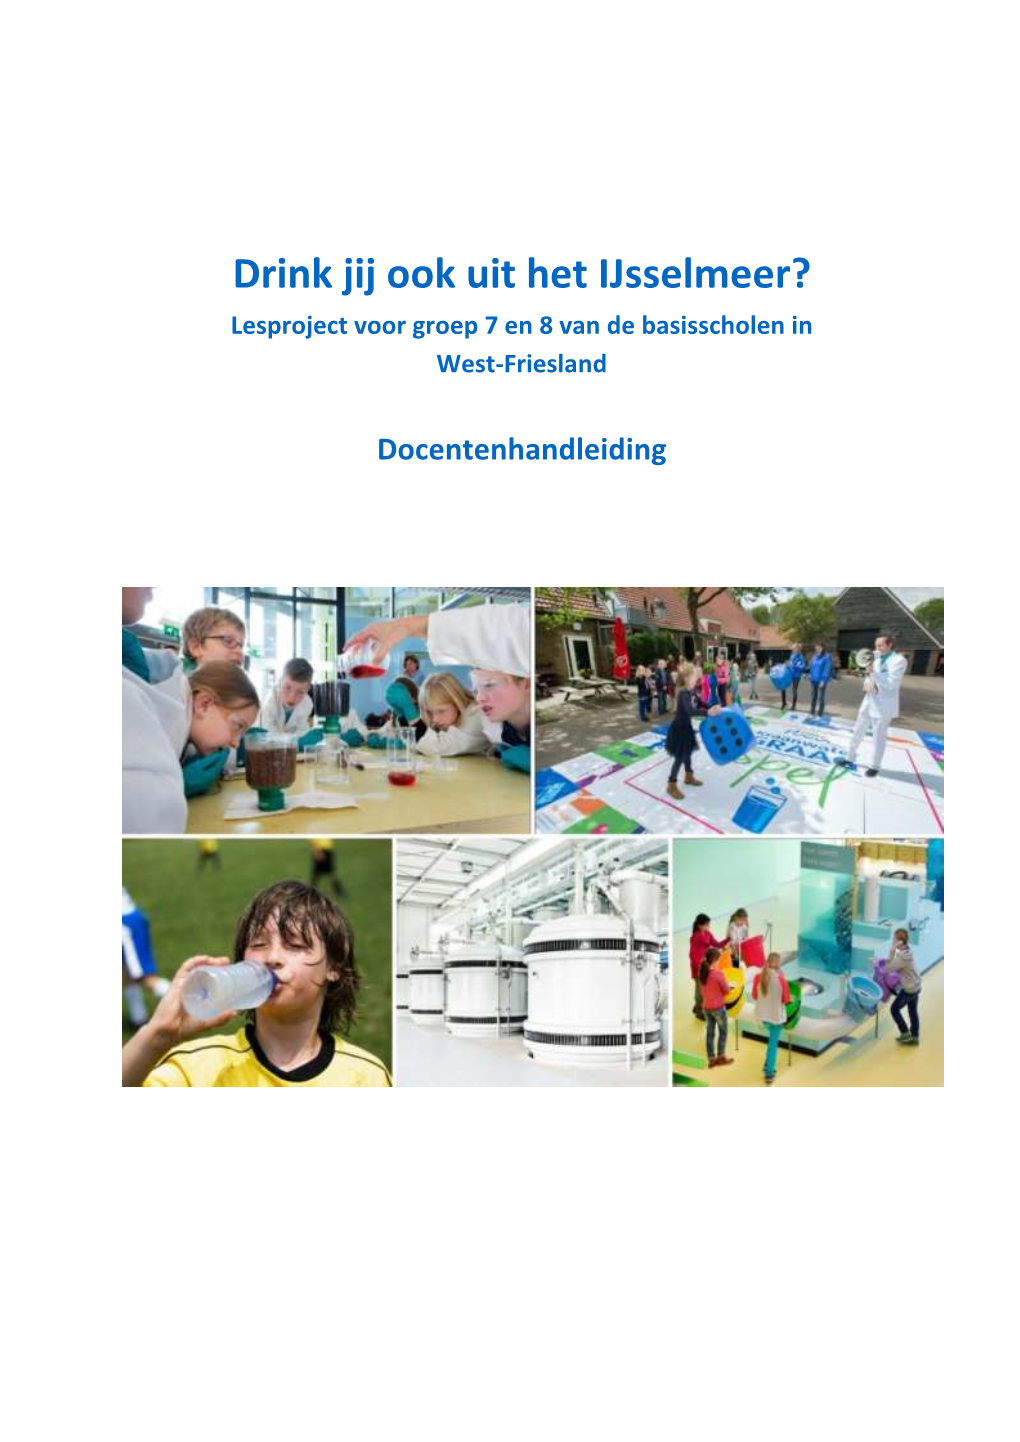 Drink Jij Ook Uit Het Ijsselmeer? Lesproject Voor Groep 7 En 8 Van De Basisscholen in West-Friesland